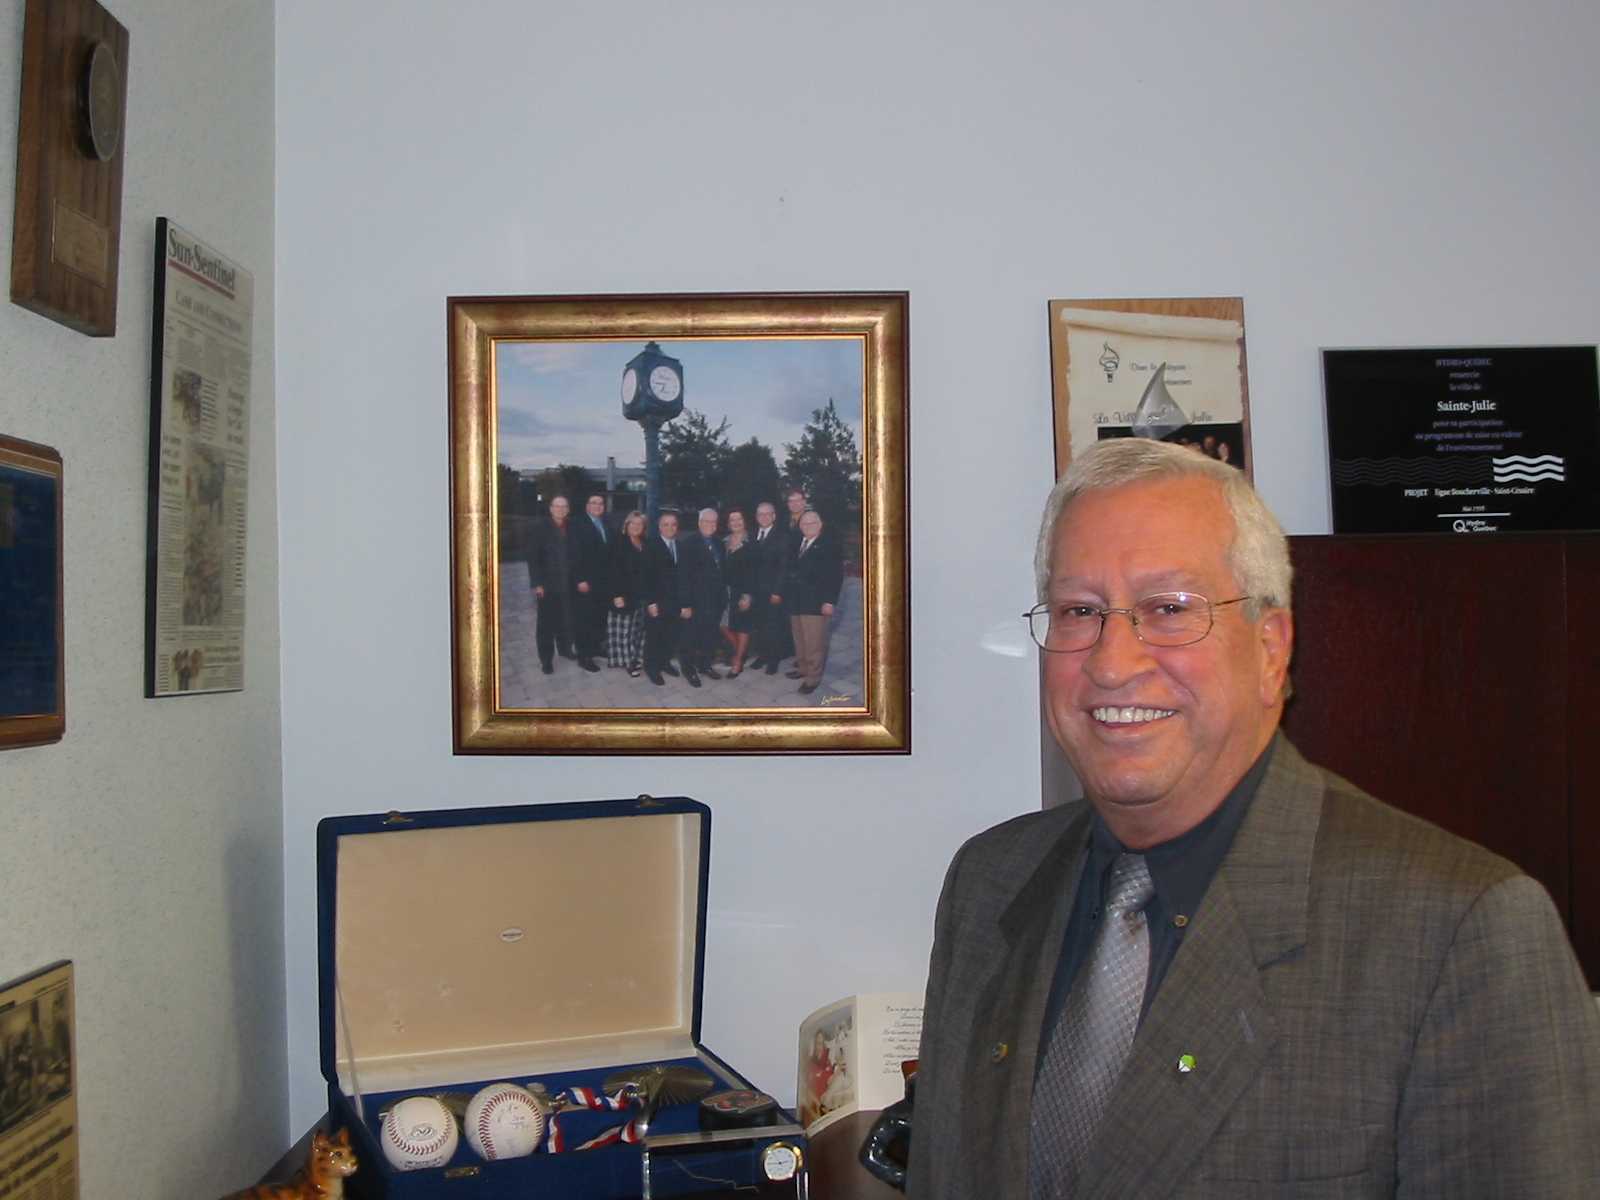 Décès de M. Yvon Major, maire de Sainte-Julie de 1993 à 2005